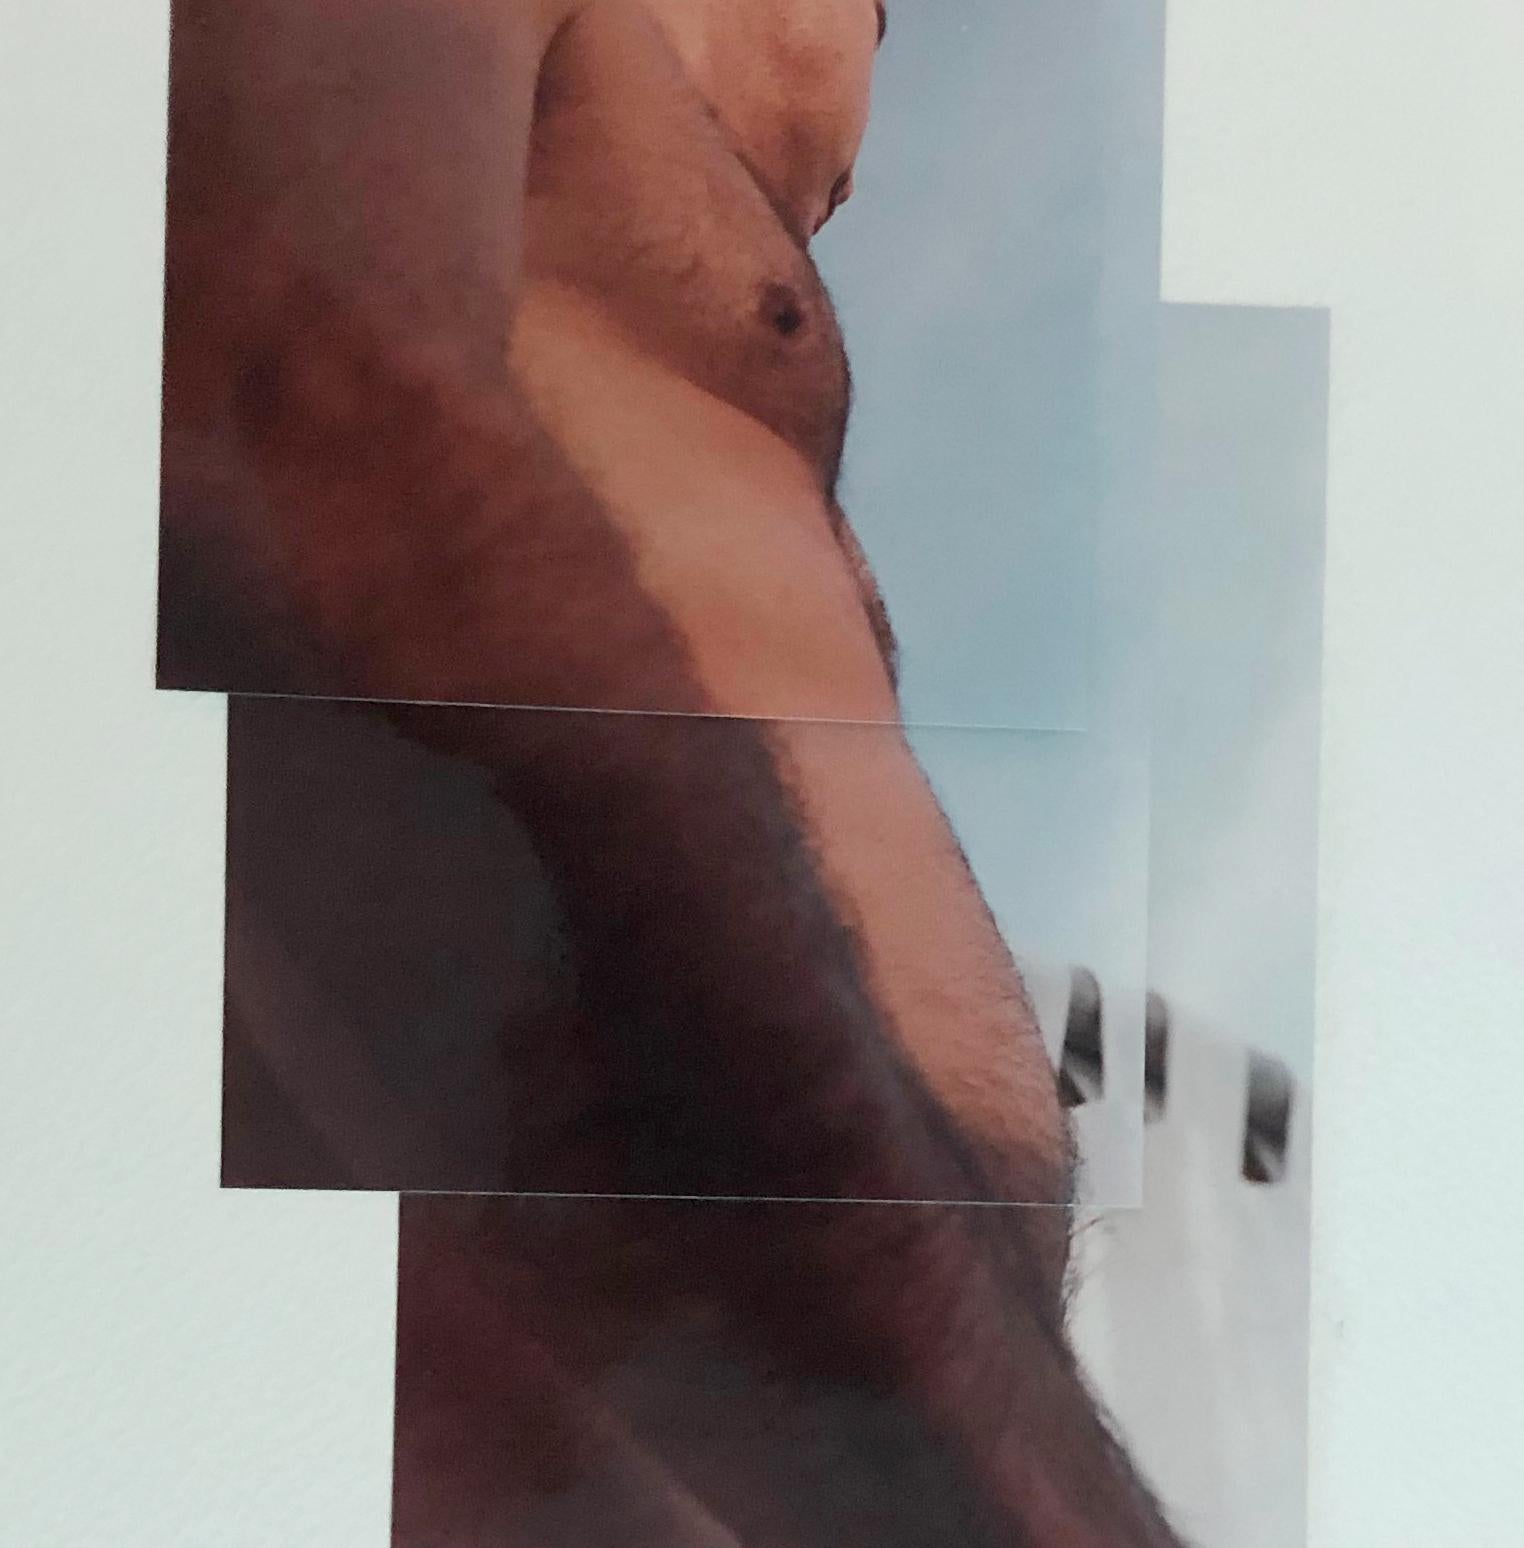 Billing, 2002 von Celso José Castro Daza
Aus der Reihe Identidad
Einzigartige Fotocollage
Blattgröße: 27 in. H x 20 in. W
Ungerahmt

Diese einzigartigen fotografischen Arbeiten des Künstlers Celso Castro entstanden, als der Künstler 1987 aus Italien